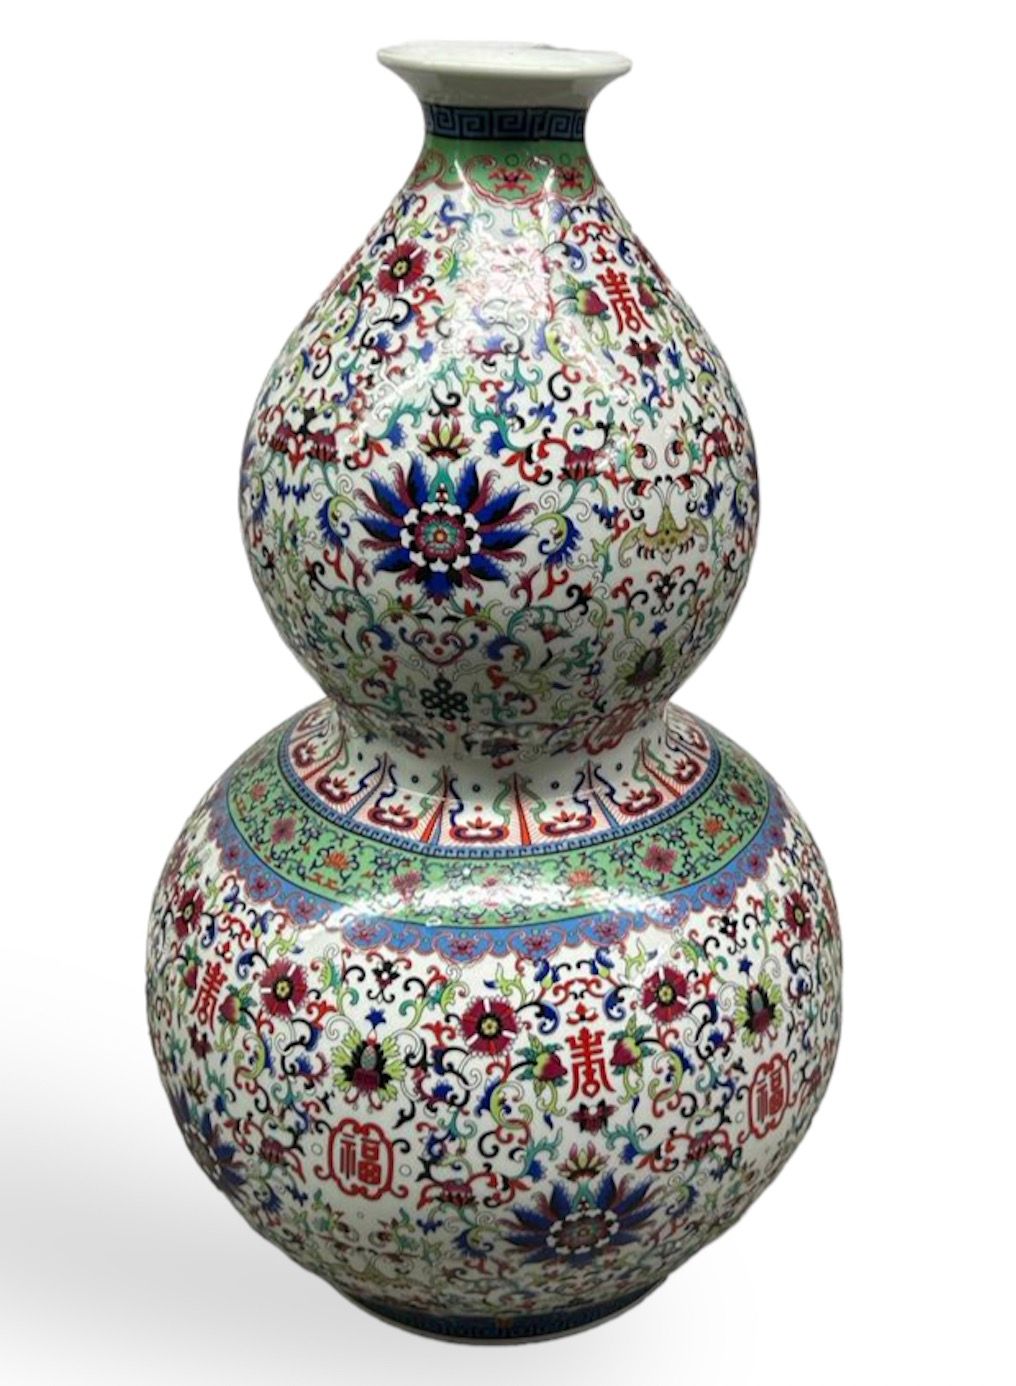 Null 中国
一个大型的瓷器双葫芦花瓶，用粉彩装饰着莲花、卷轴、如意楣，框着吉祥的符号。
背面有乾隆年款四字。
现代时期。 
H.60厘米。